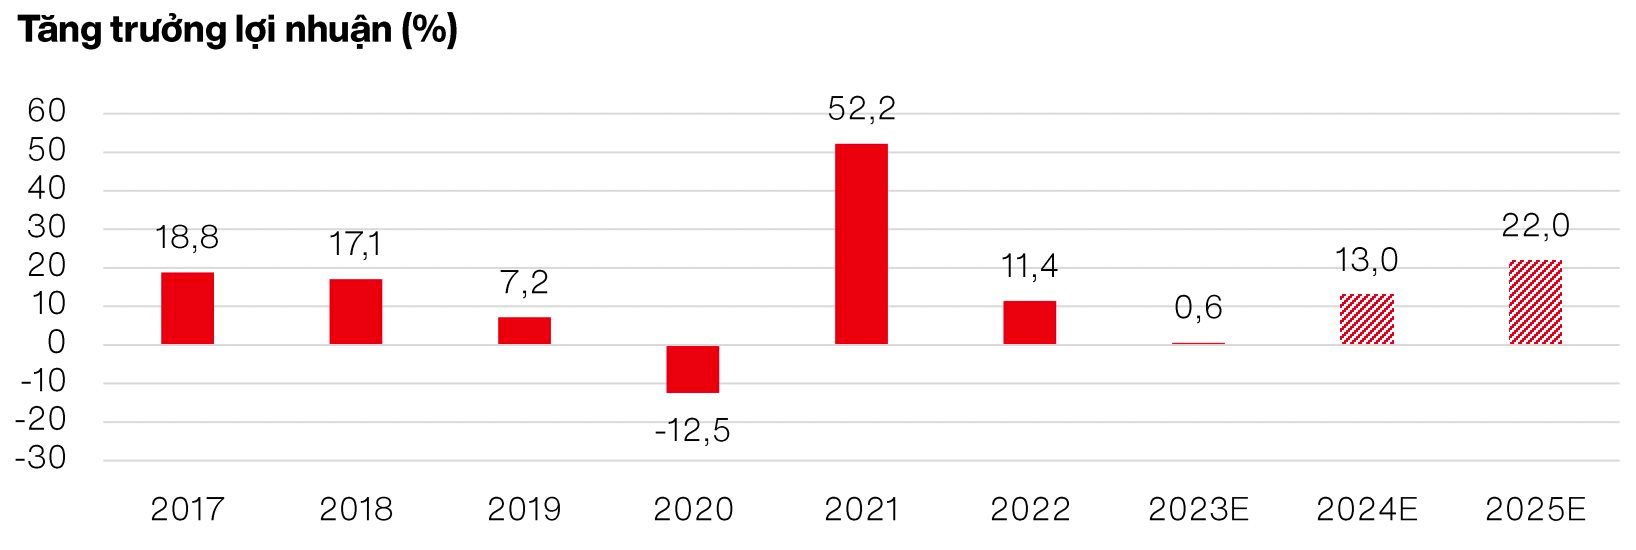 VinaCapital dự báo tăng trưởng tổng LNST của doanh nghiệp năm 2024 và nhóm ngành tiềm năng để đầu tư - Ảnh 1.